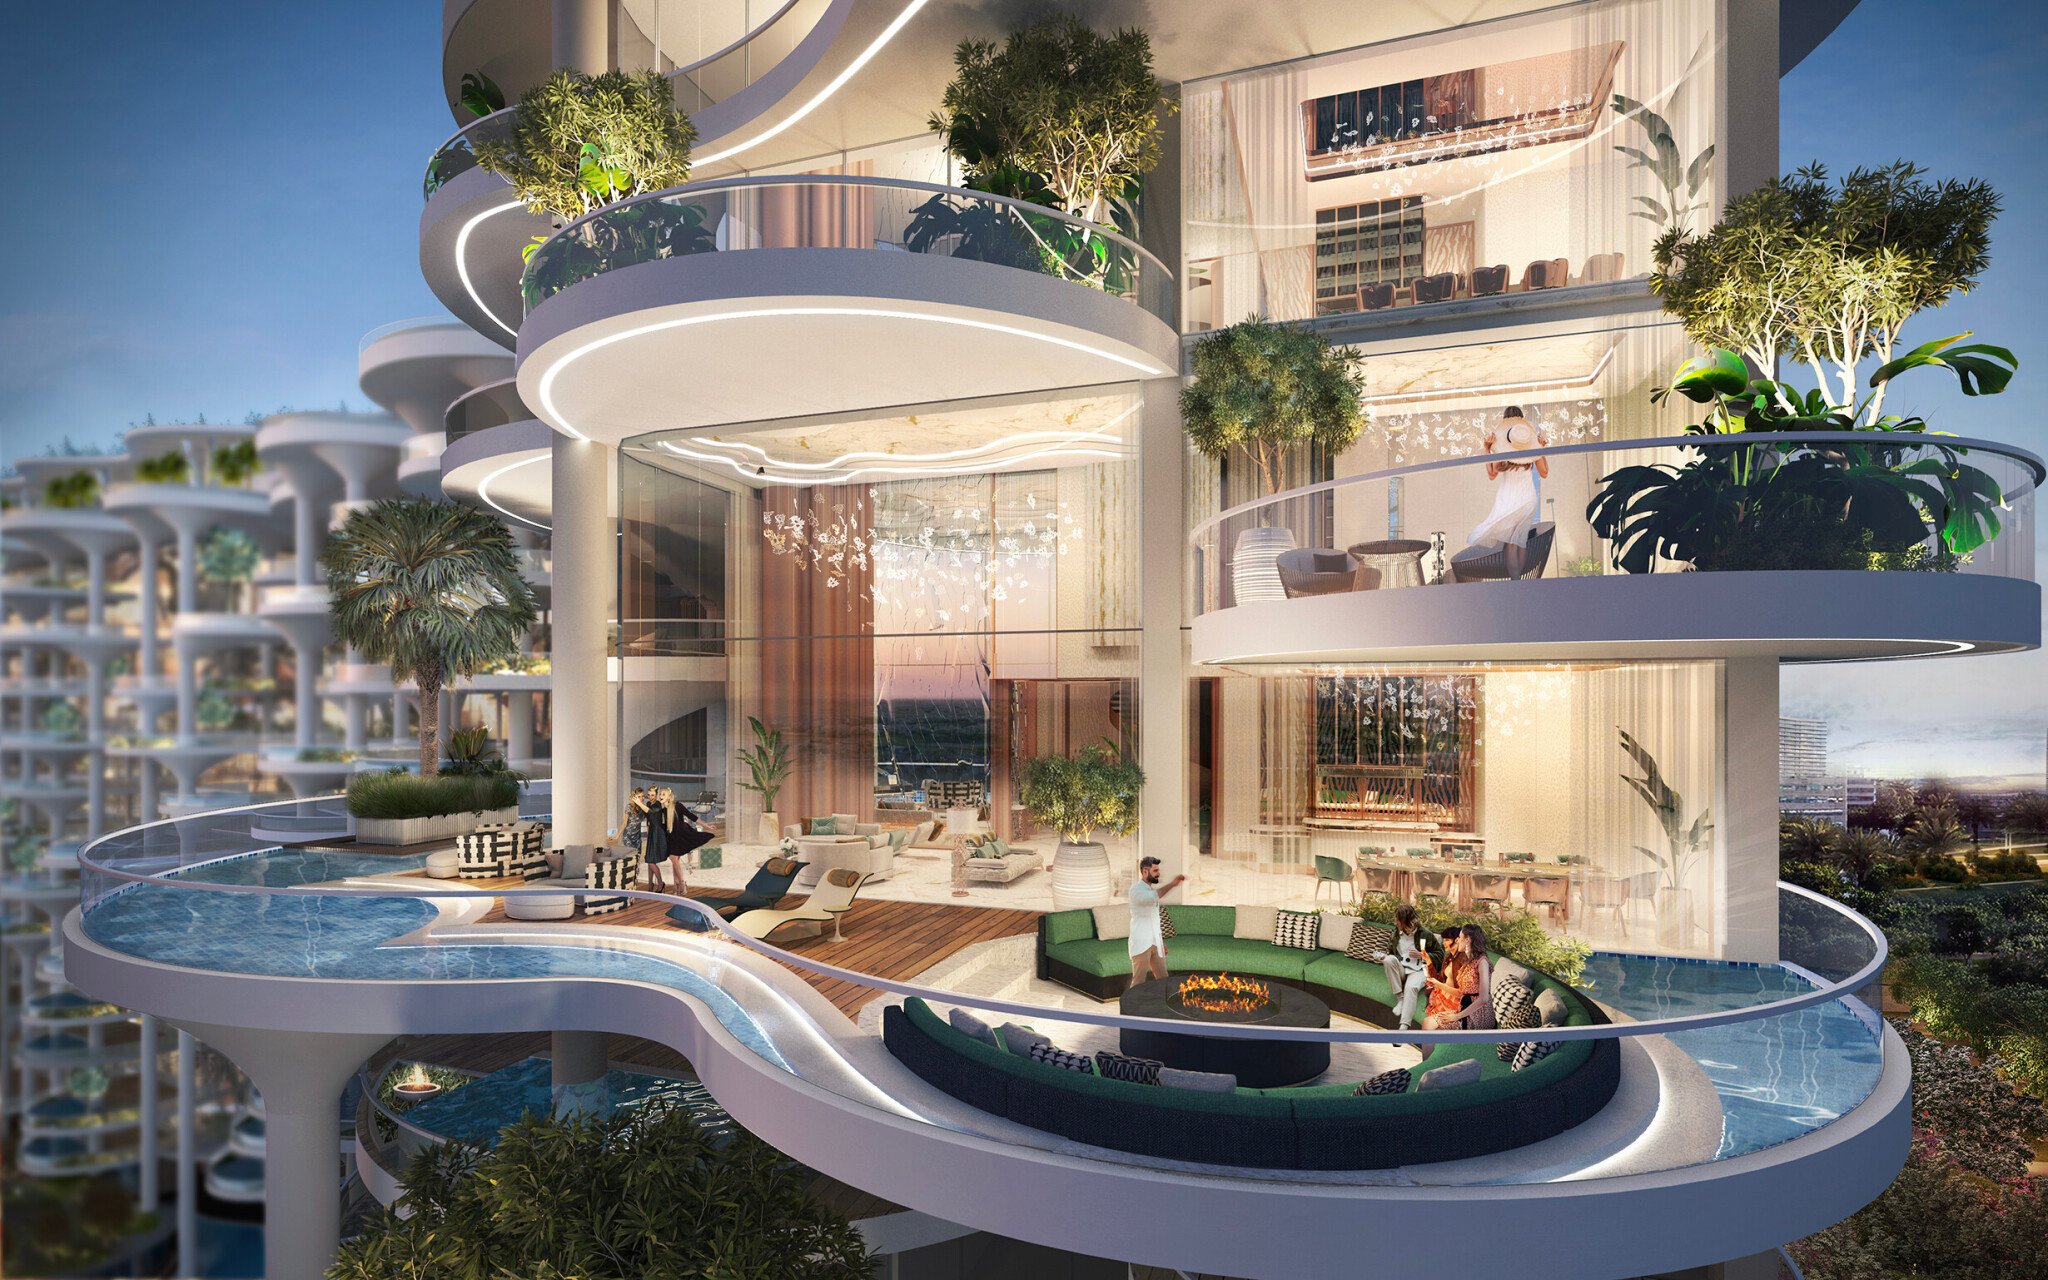 Rezidentem v Dubaji. Rostoucí budovy nabízejí luxusní bydlení, ale i ideální investici, říká Michal Fusek z Trim Real Estate